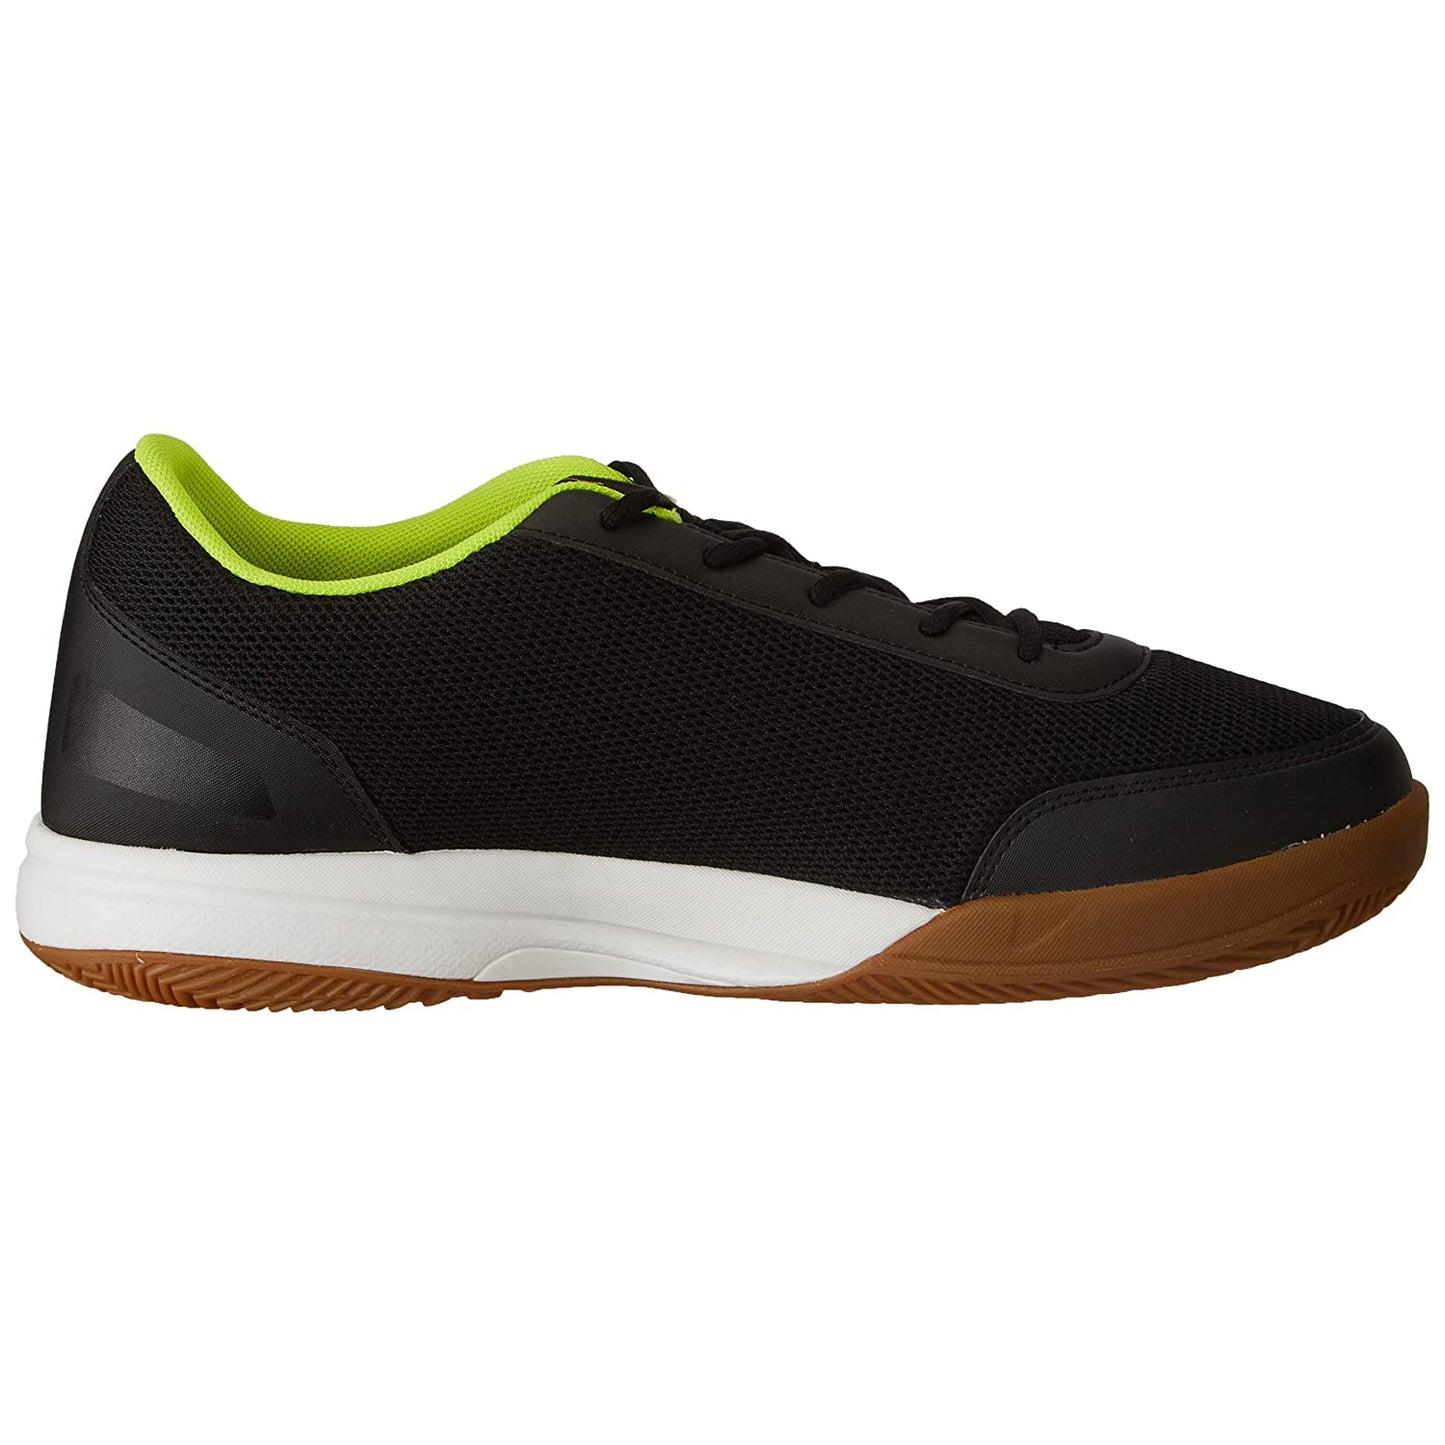 Puma Ad-court Men's Badminton Shoes - Best Price online Prokicksports.com